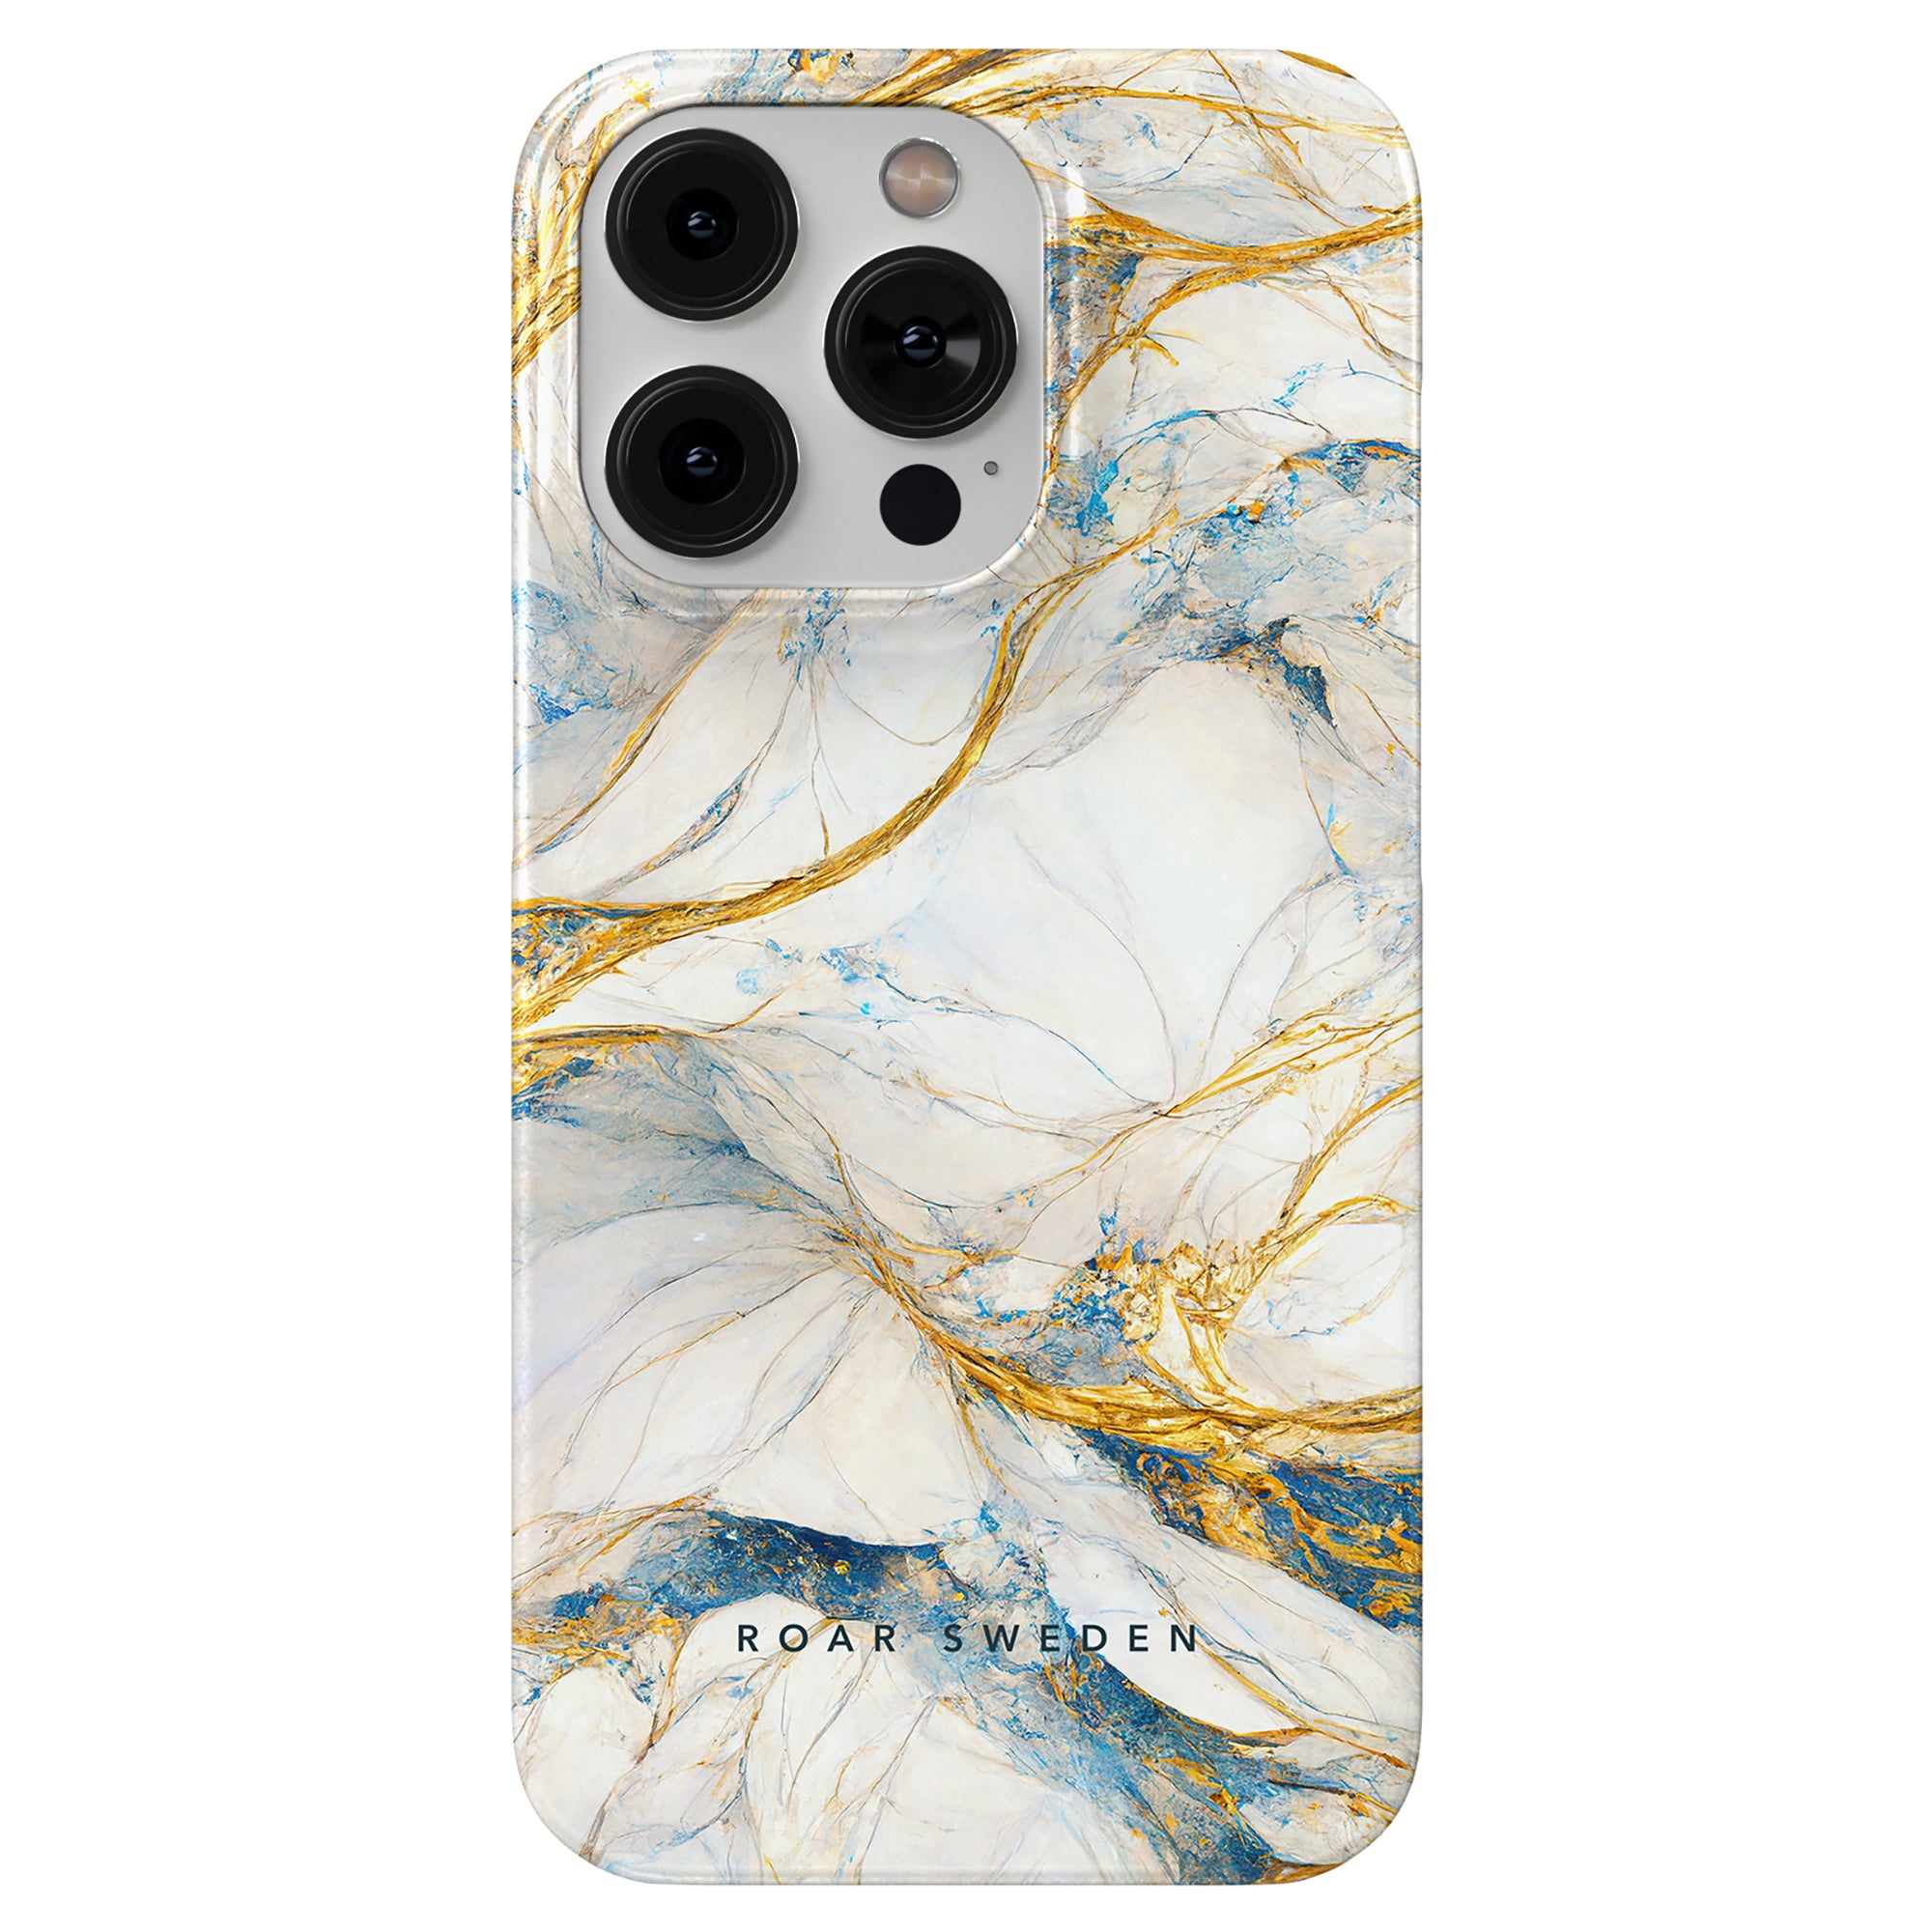 Ett sofistikerat och elegant Queen Marble - Slim fodral designat för att ge ett stilfullt och lyxigt skydd för din iPhone 11.